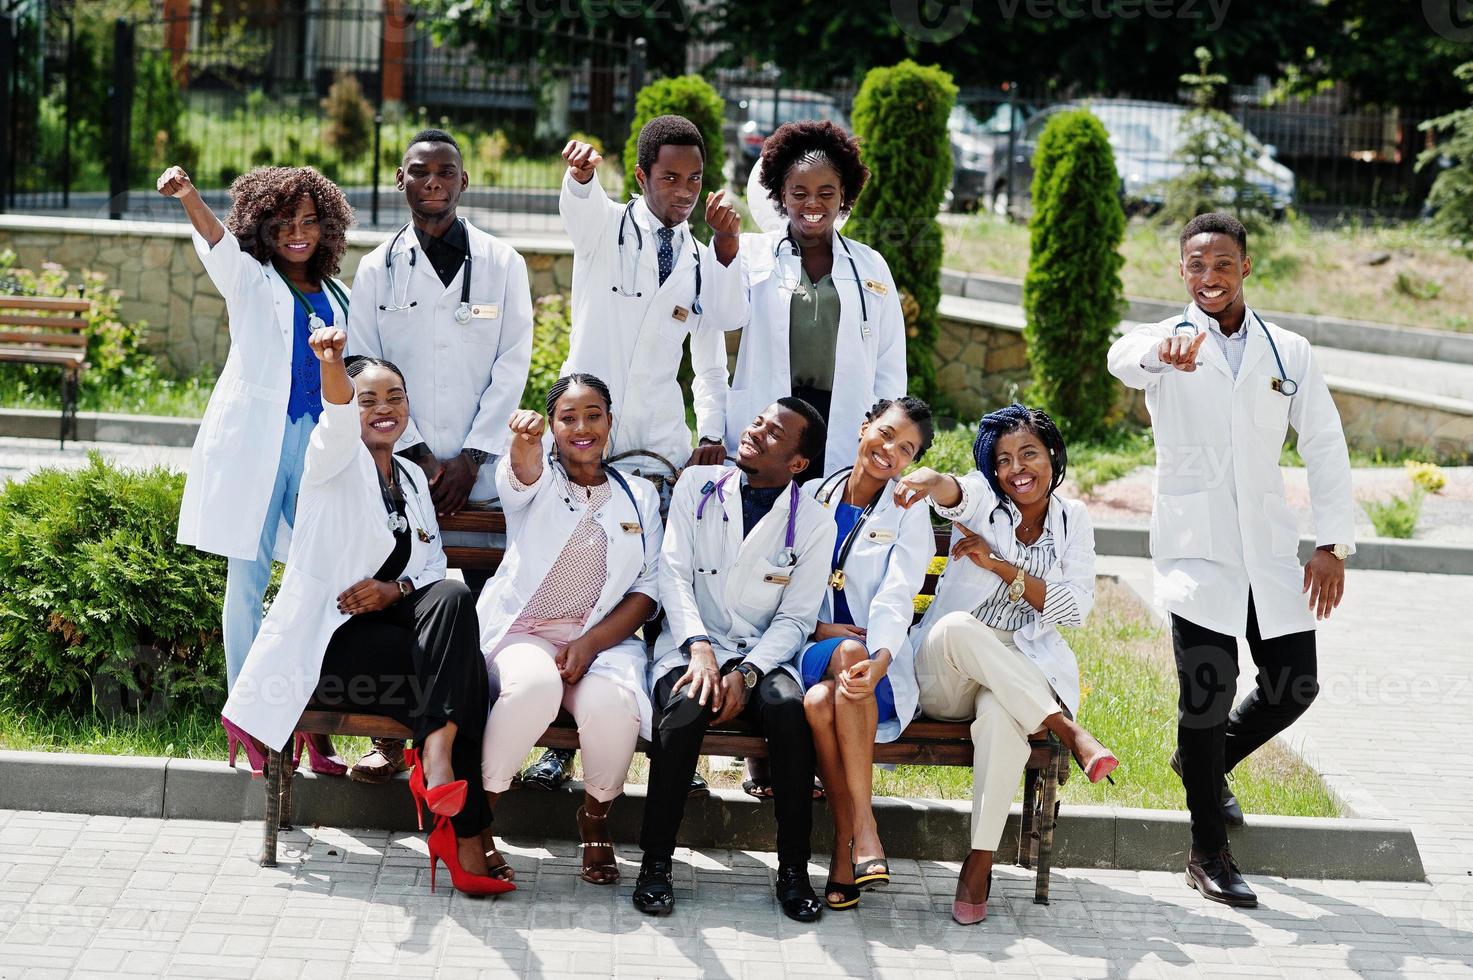 groep afrikaanse artsenstudenten in de buurt van medische universiteit buiten. foto